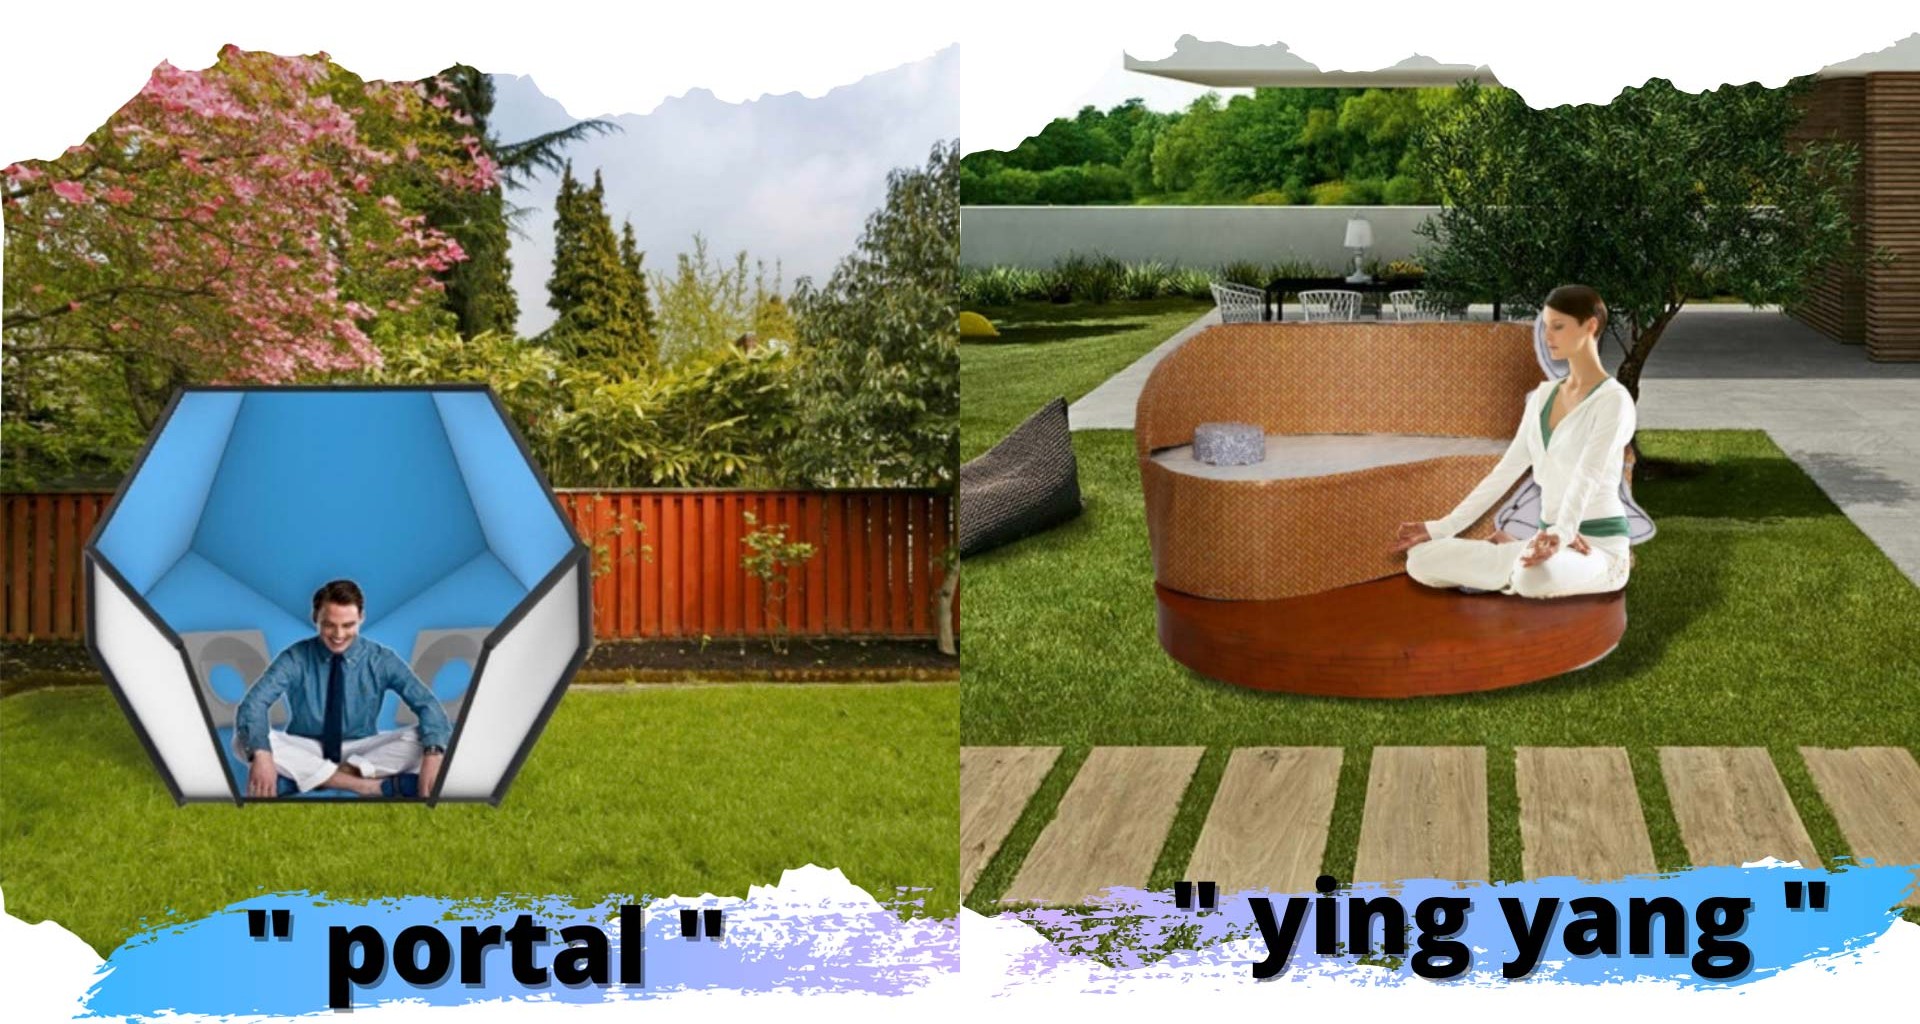 Modelo hexagonal con nombre portal en la izquierda y modelo ying yang del lado derecho